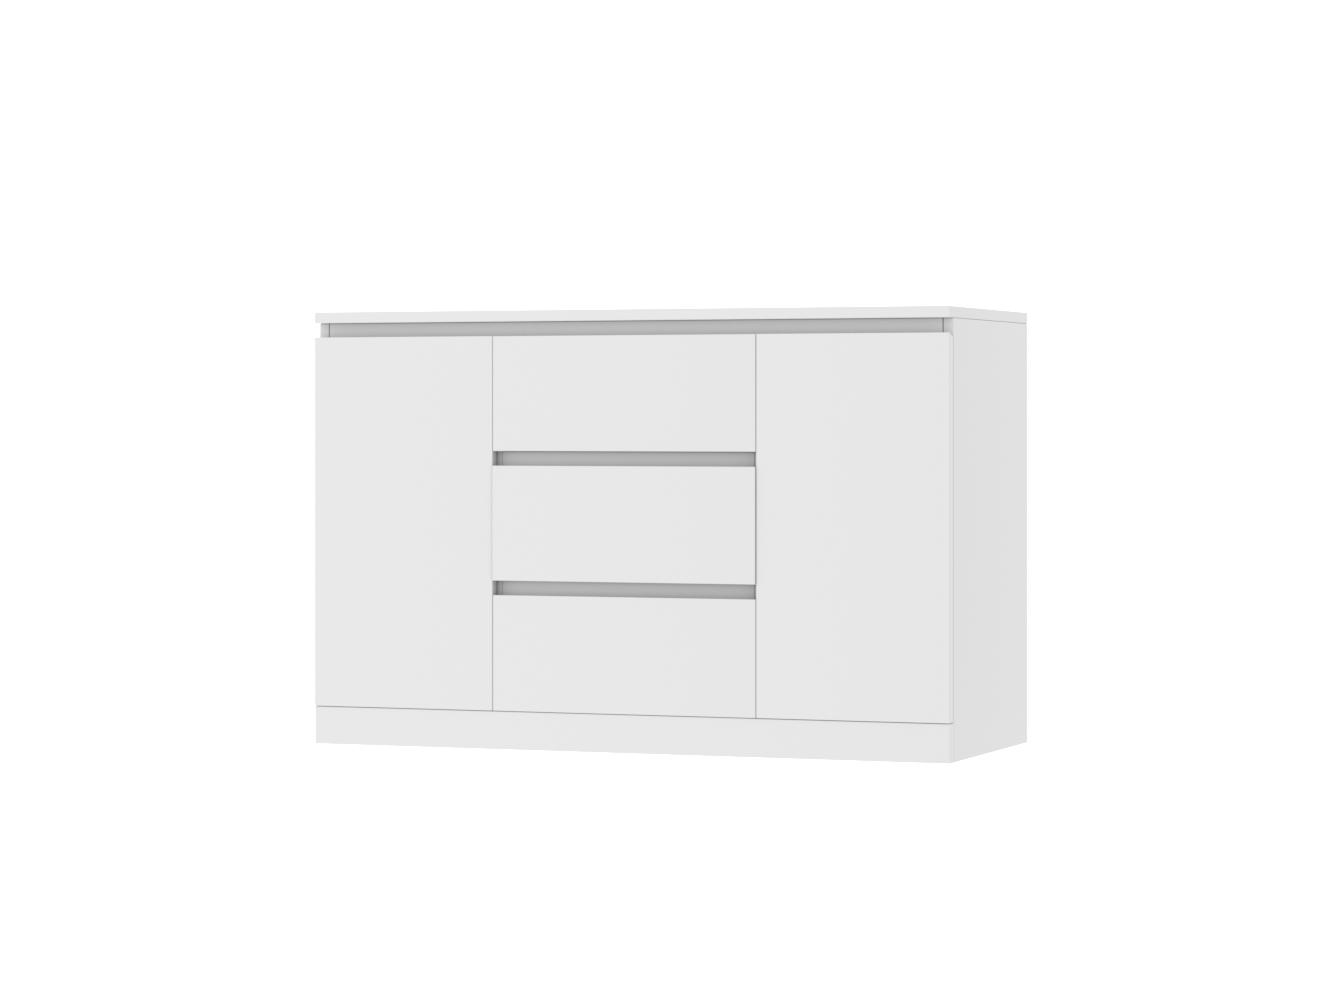 Комод Мальм 21 white ИКЕА (IKEA) изображение товара